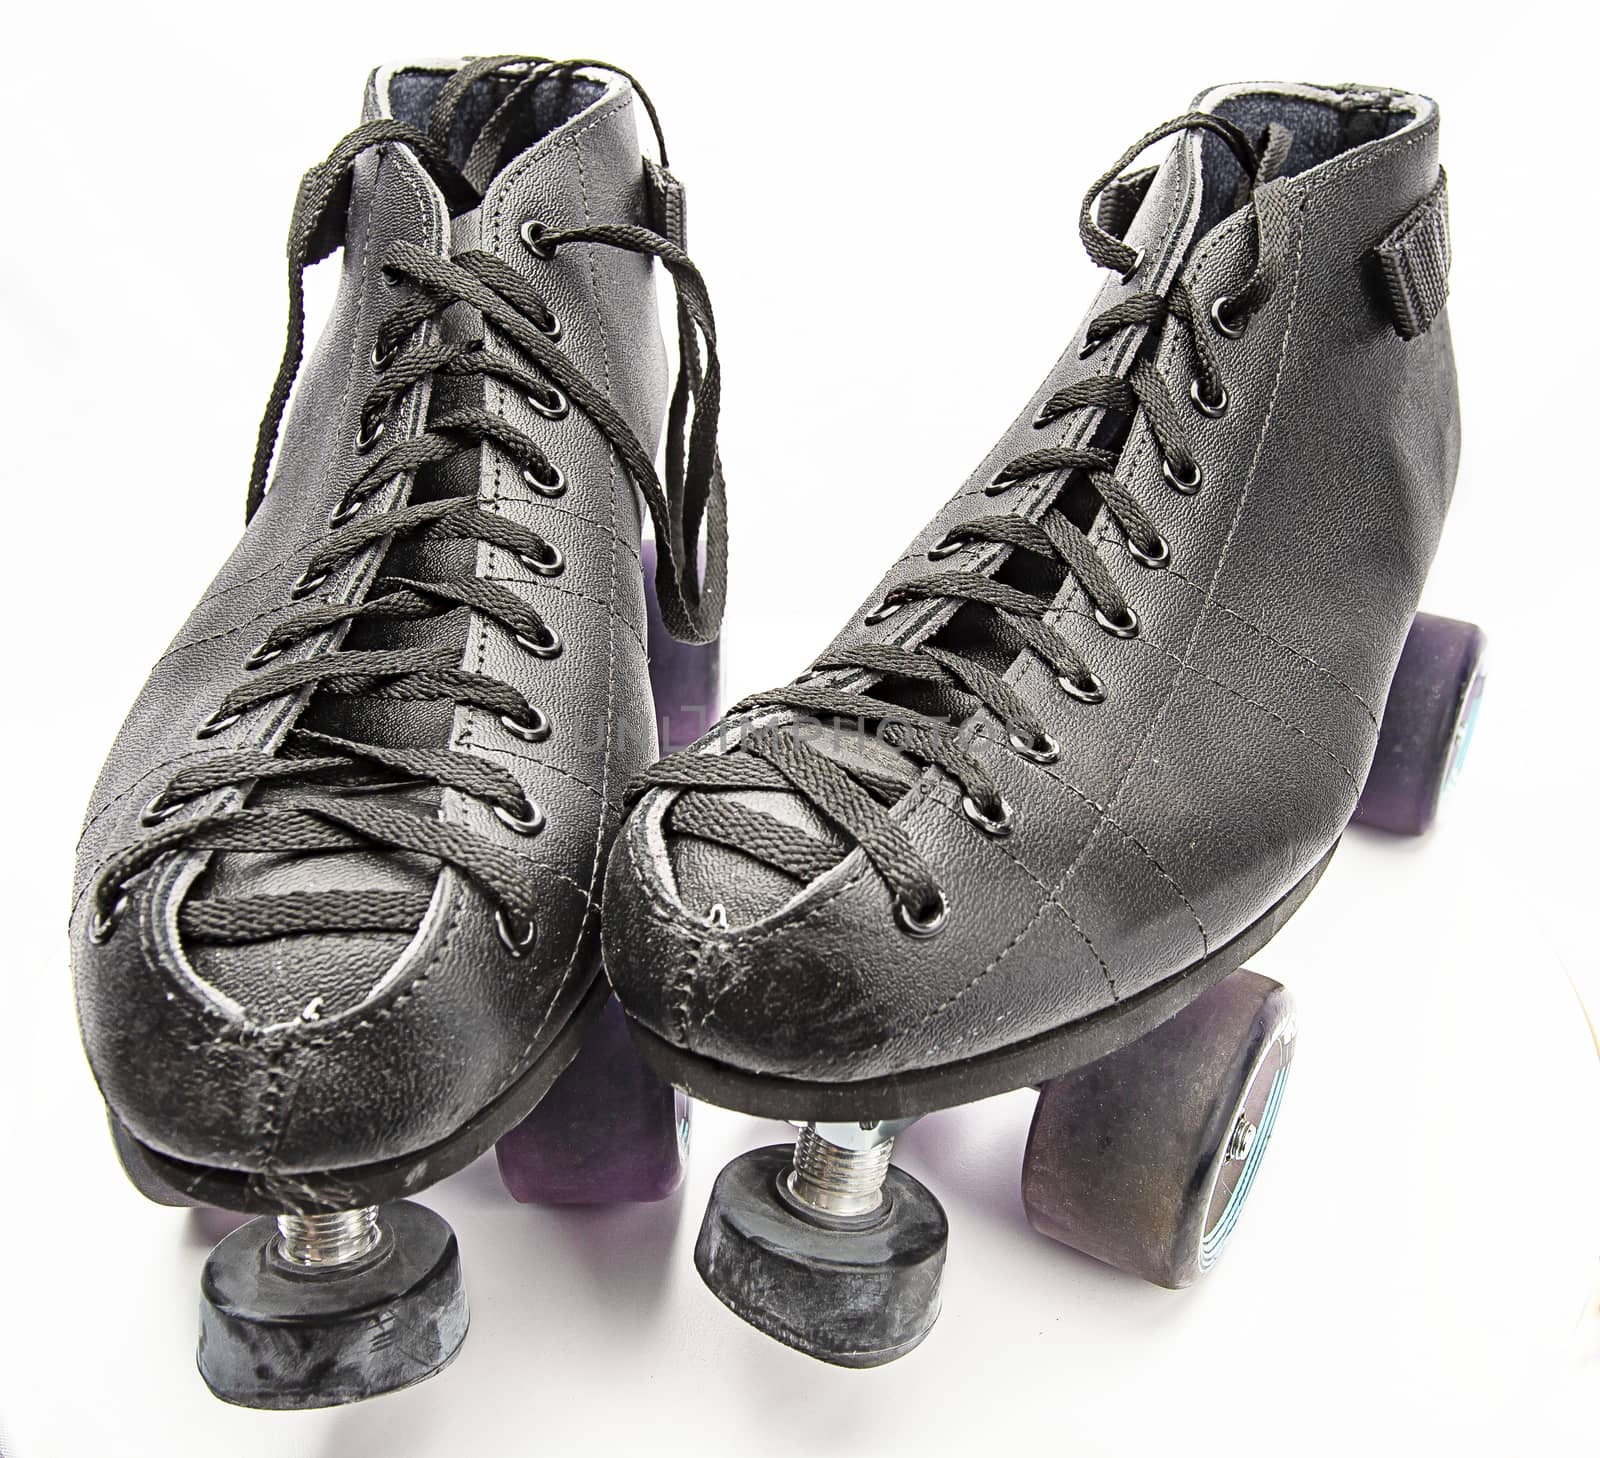 Pair of roller skate by mypstudio